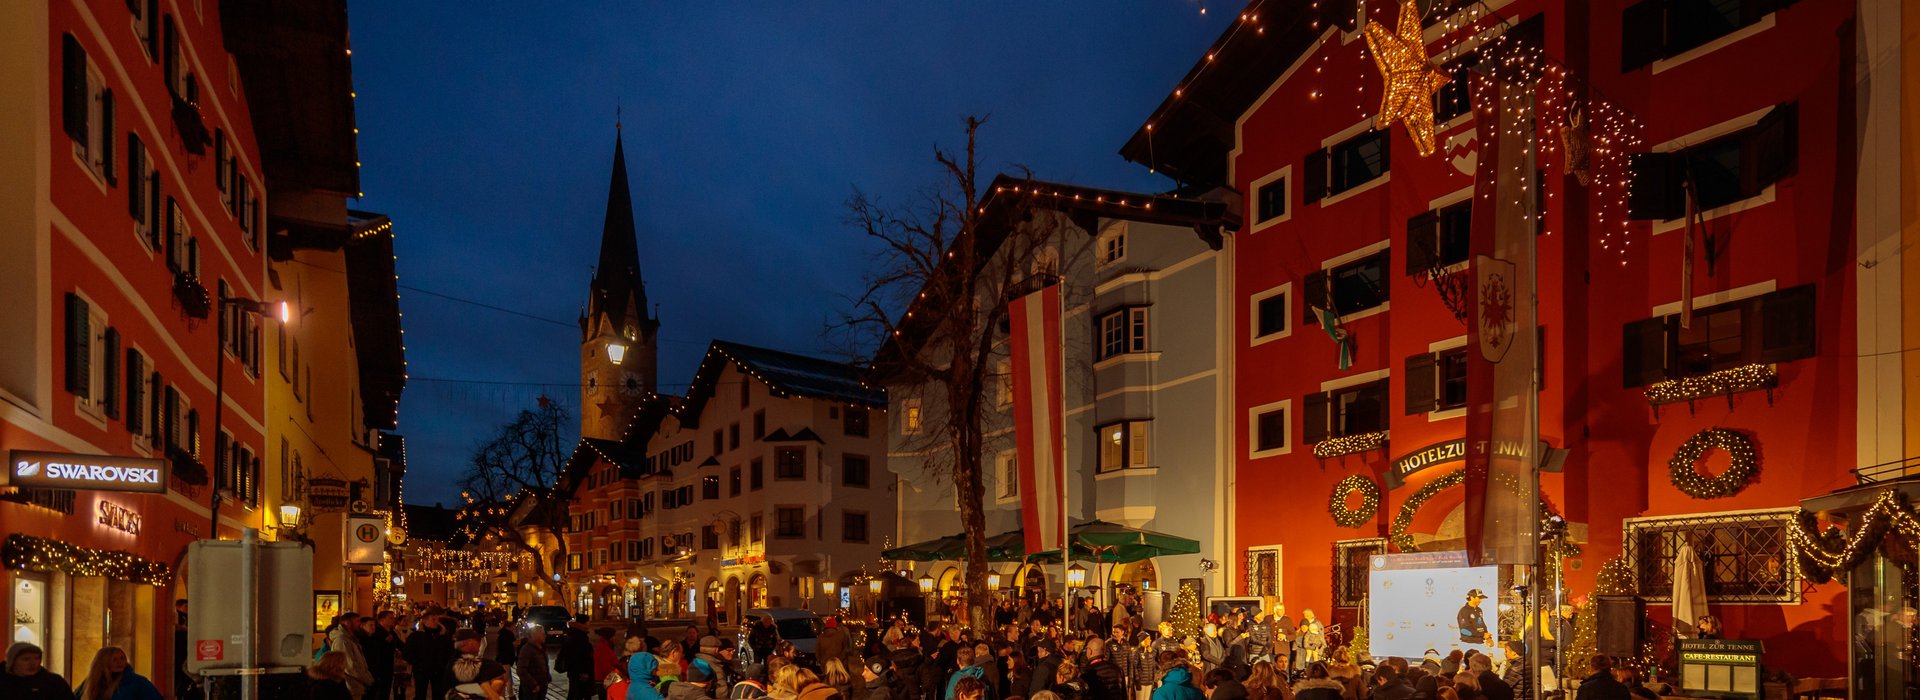 Vorderstadt Kitzbühel Weihnachtsbeleuchtung Menschen beim Event draussen